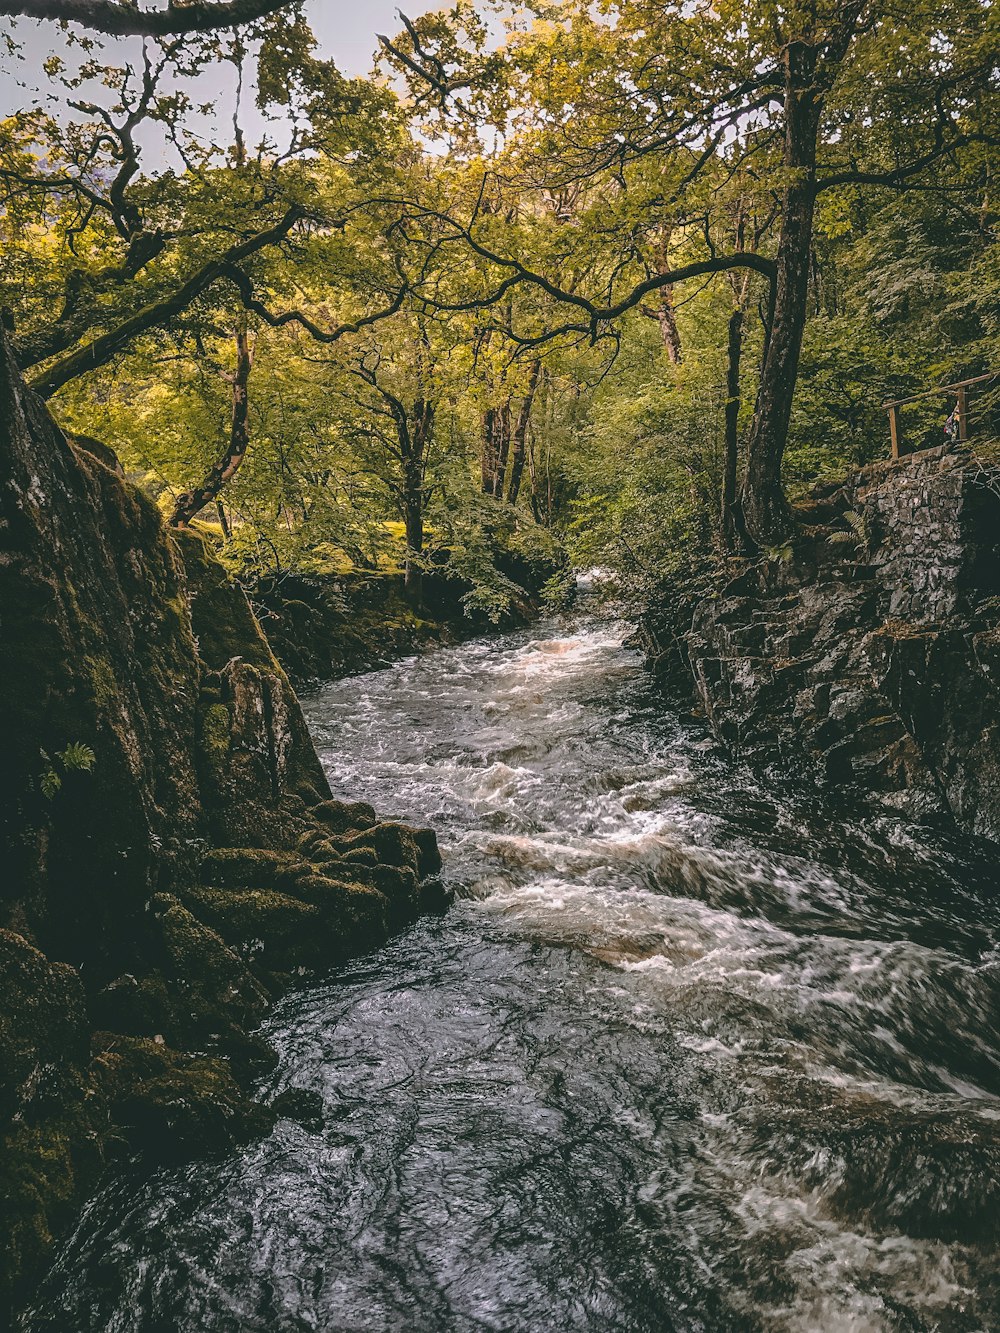 river near trees